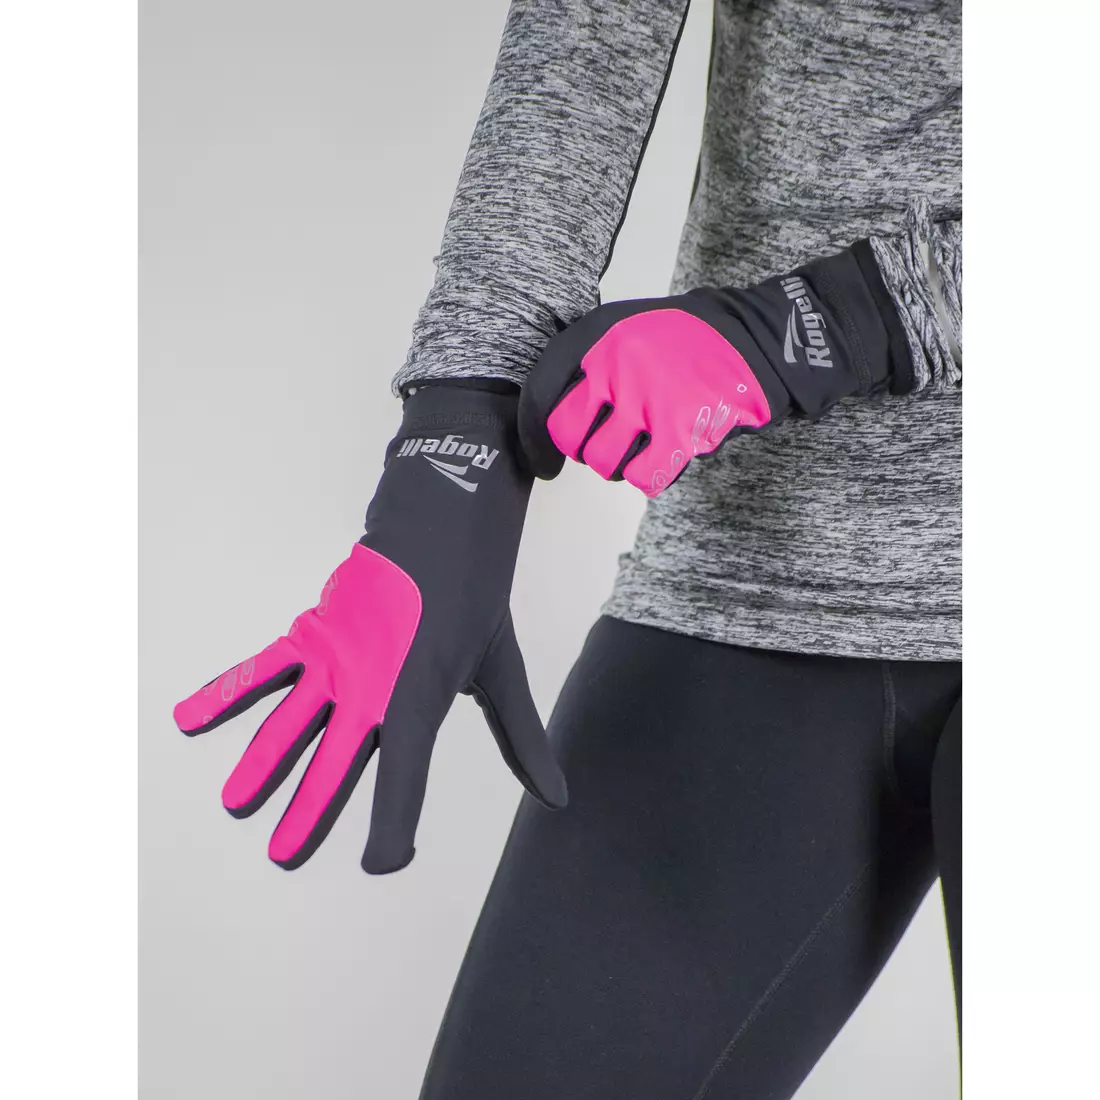 ROGELLI RUN 890.004 TOUCH Dámské běžecké rukavice černé a růžové